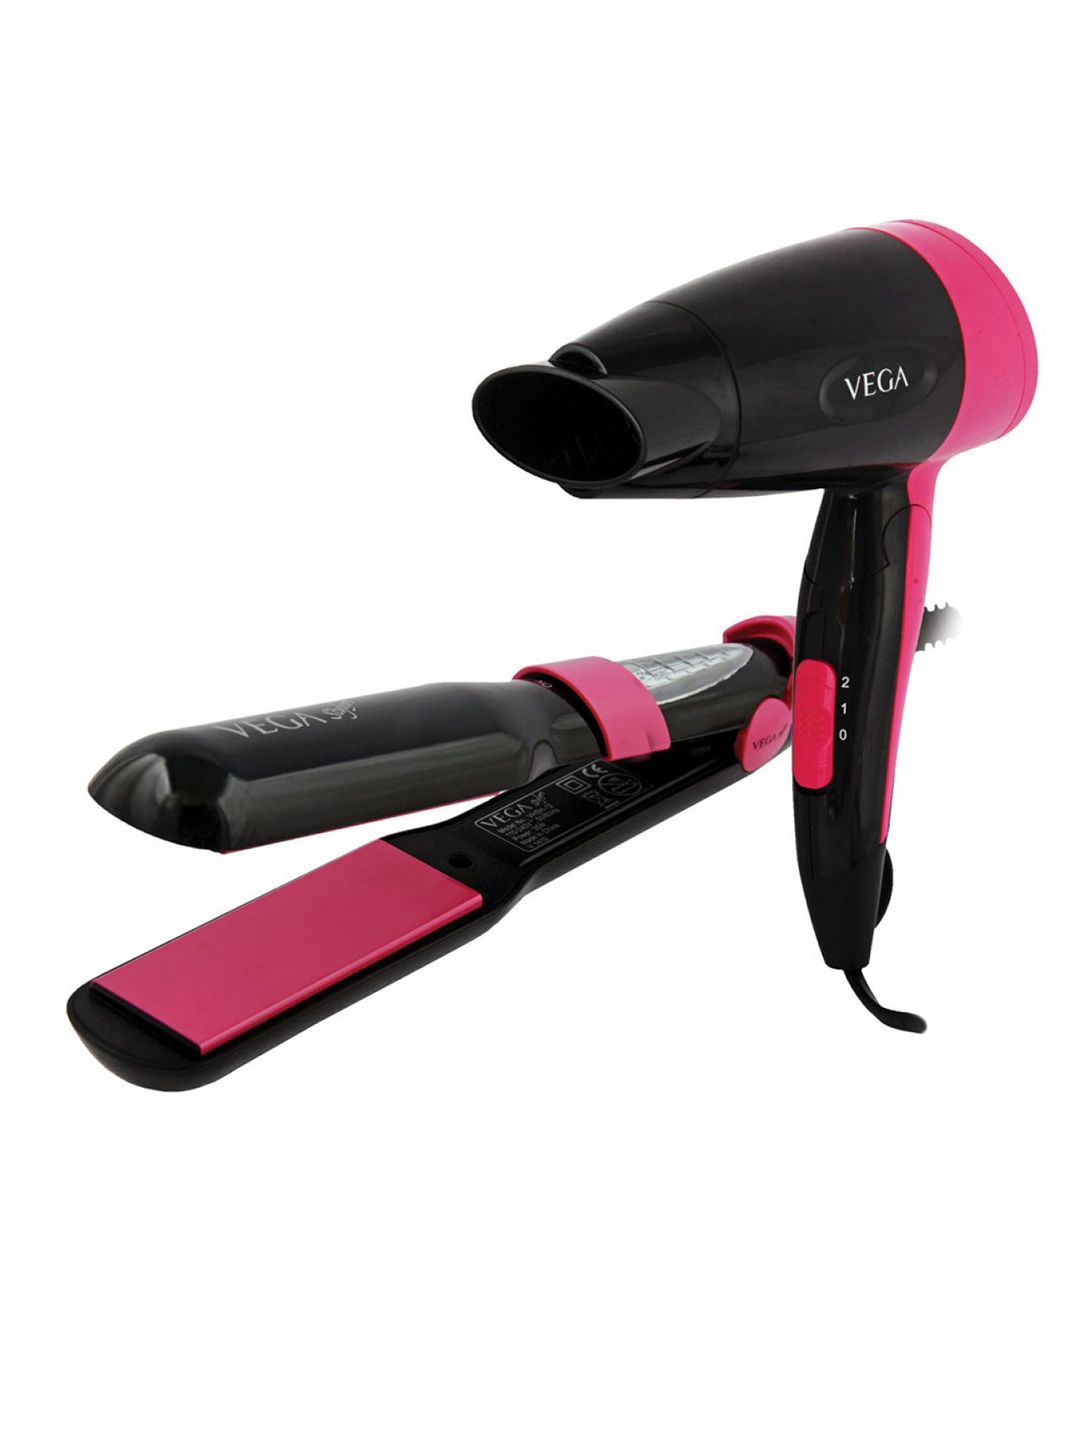 VEGA Black & Pink Miss Perfect Hair Dryer + Hair Straightener VHSS-01 Price in India